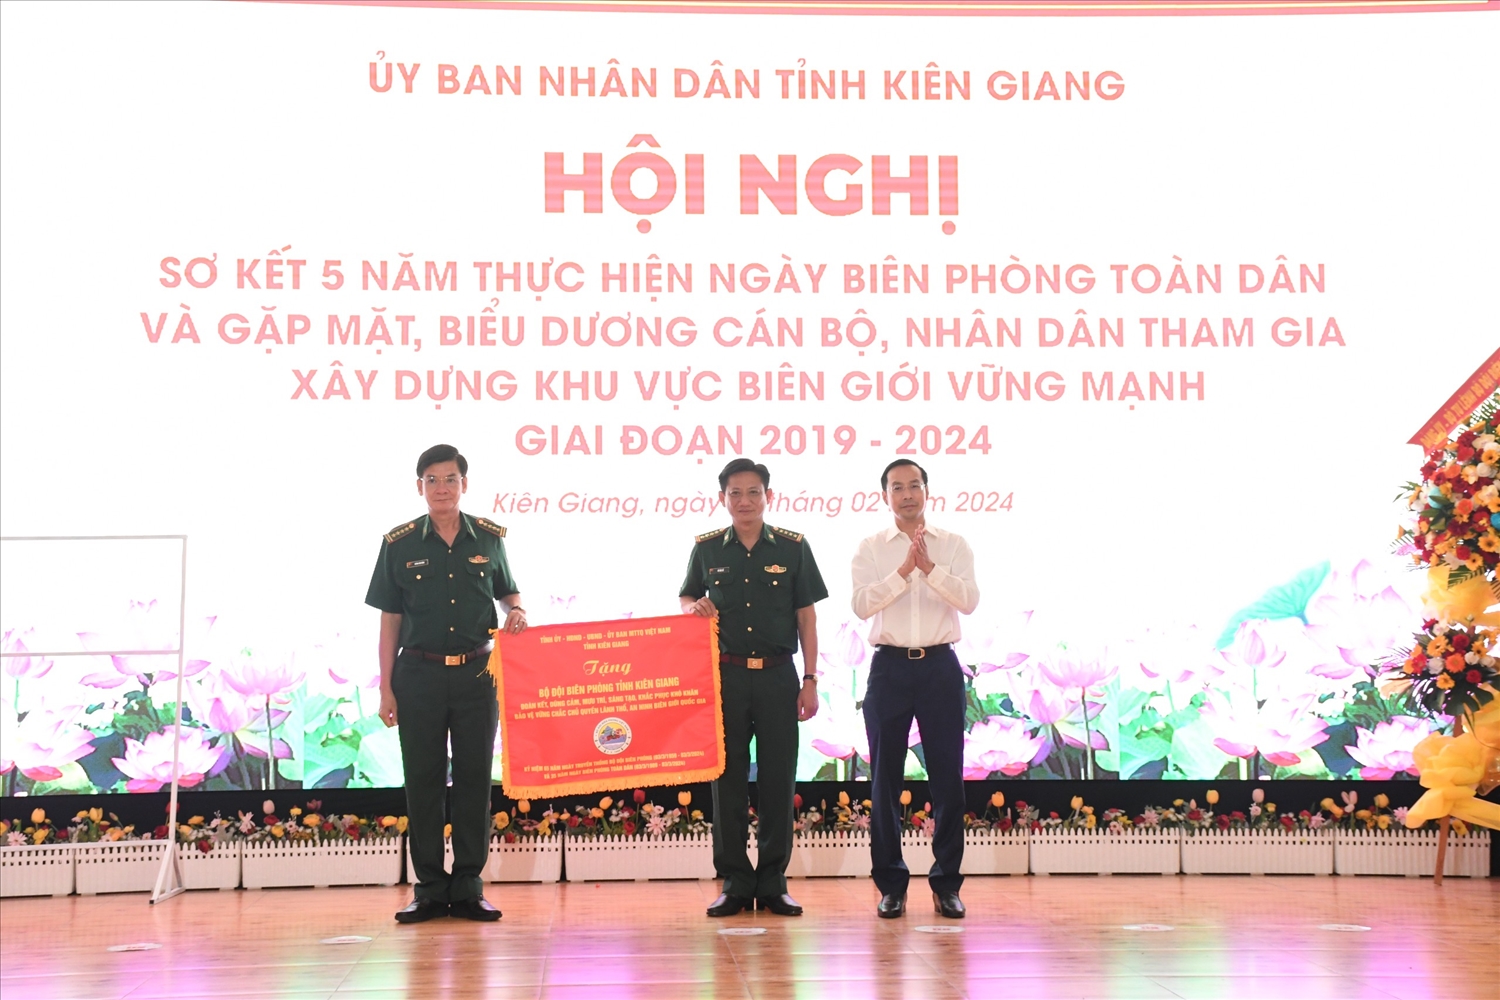 Ông Nguyễn Thanh Nhàn trao tặng bức trướng của Tỉnh ủy-HĐND-UBND-Ủy ban MTTQ Việt Nam tỉnh Kiên Giang đến lãnh đạo Bộ Chỉ huy BĐBP tỉnh Kiên Giang